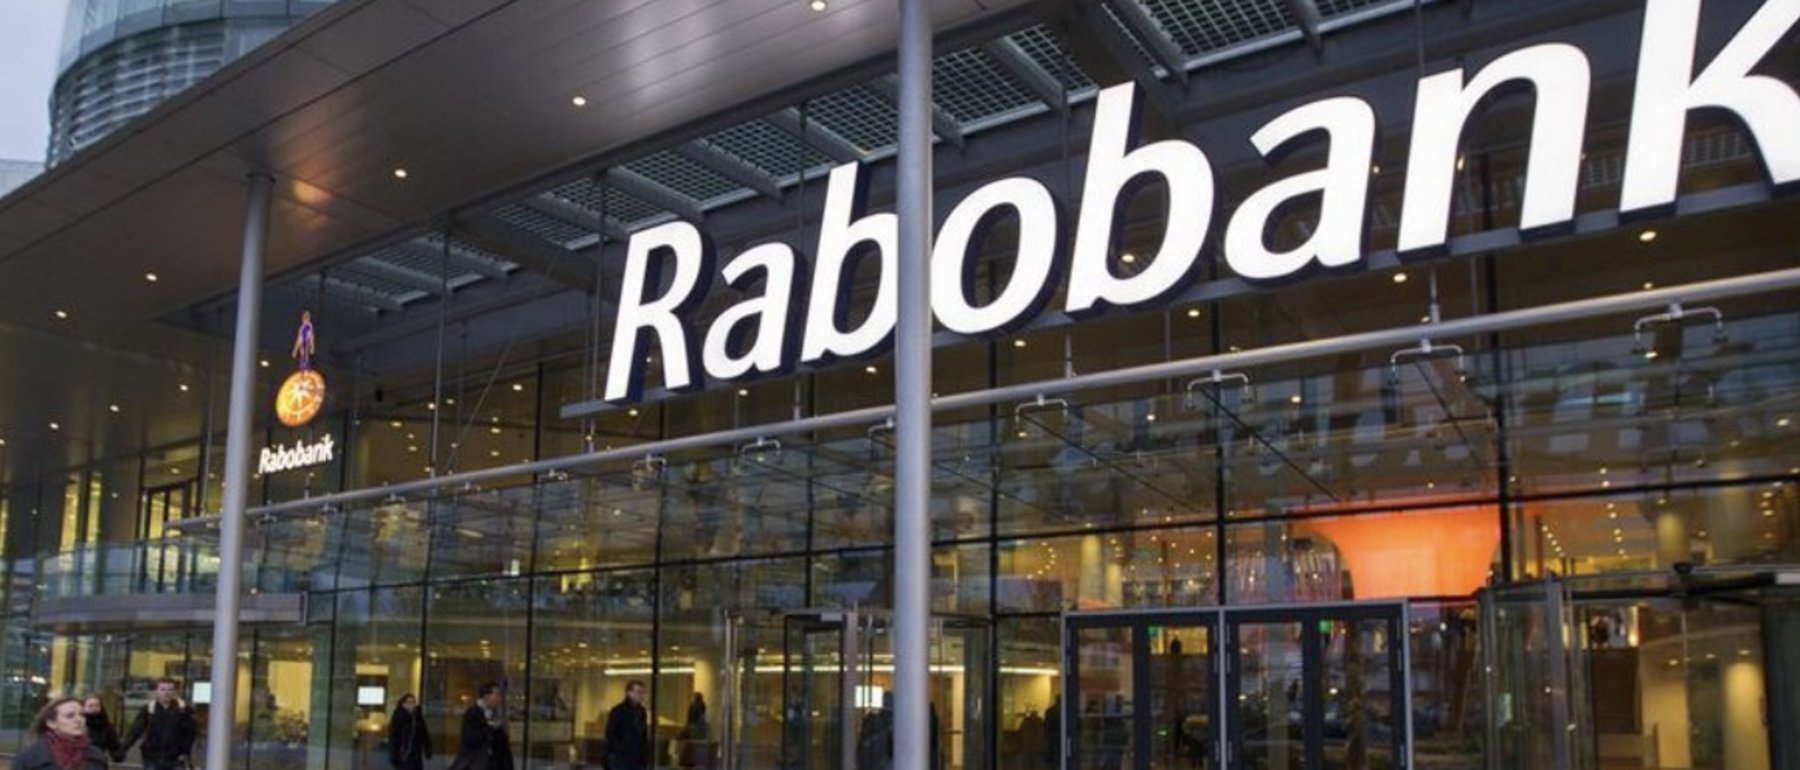 Rabobank als eerste bank die de risico-rente verlaagd